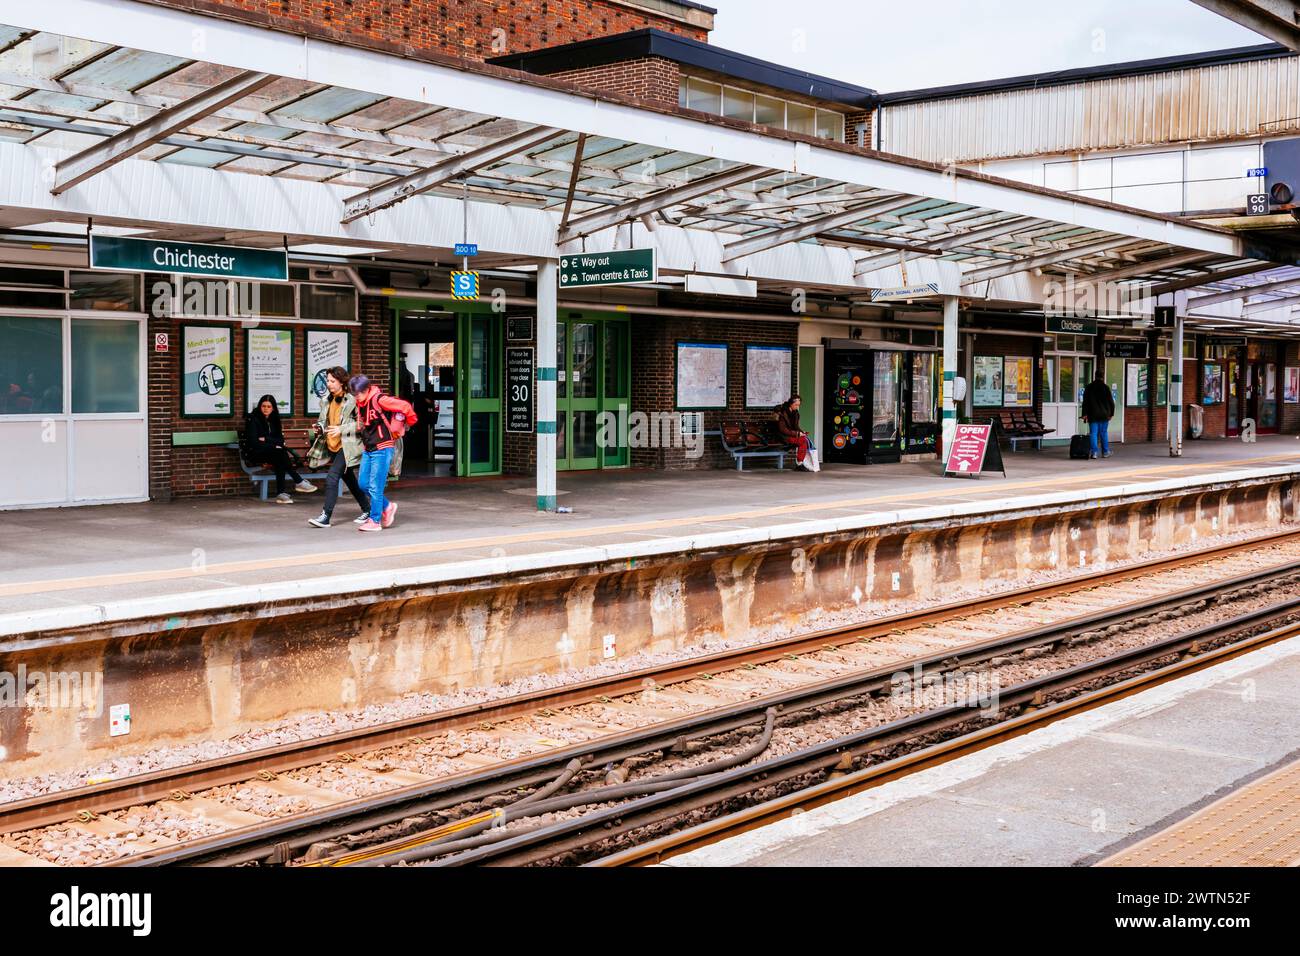 Passagiere, die auf dem Bahnsteig warten. Bahnhof Chichester. Chichester, West Sussex, South East, England, Vereinigtes Königreich, Europa Stockfoto